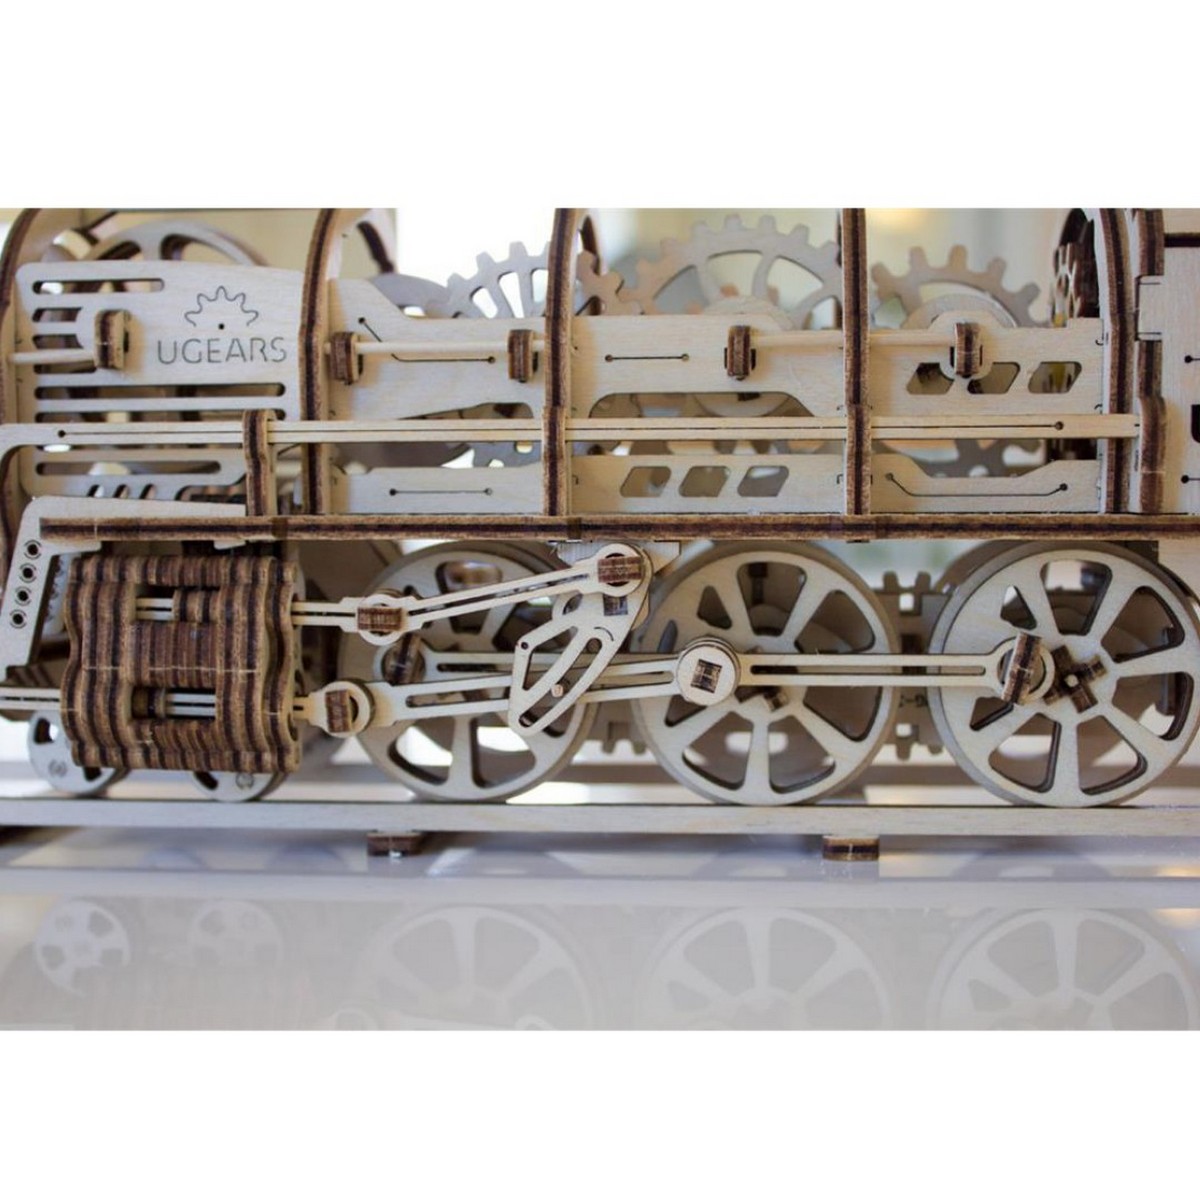 UGEARS maquette en bois pour adulte locomotive a la vapeur. une idee cadeau chez ugo et lea  (7)